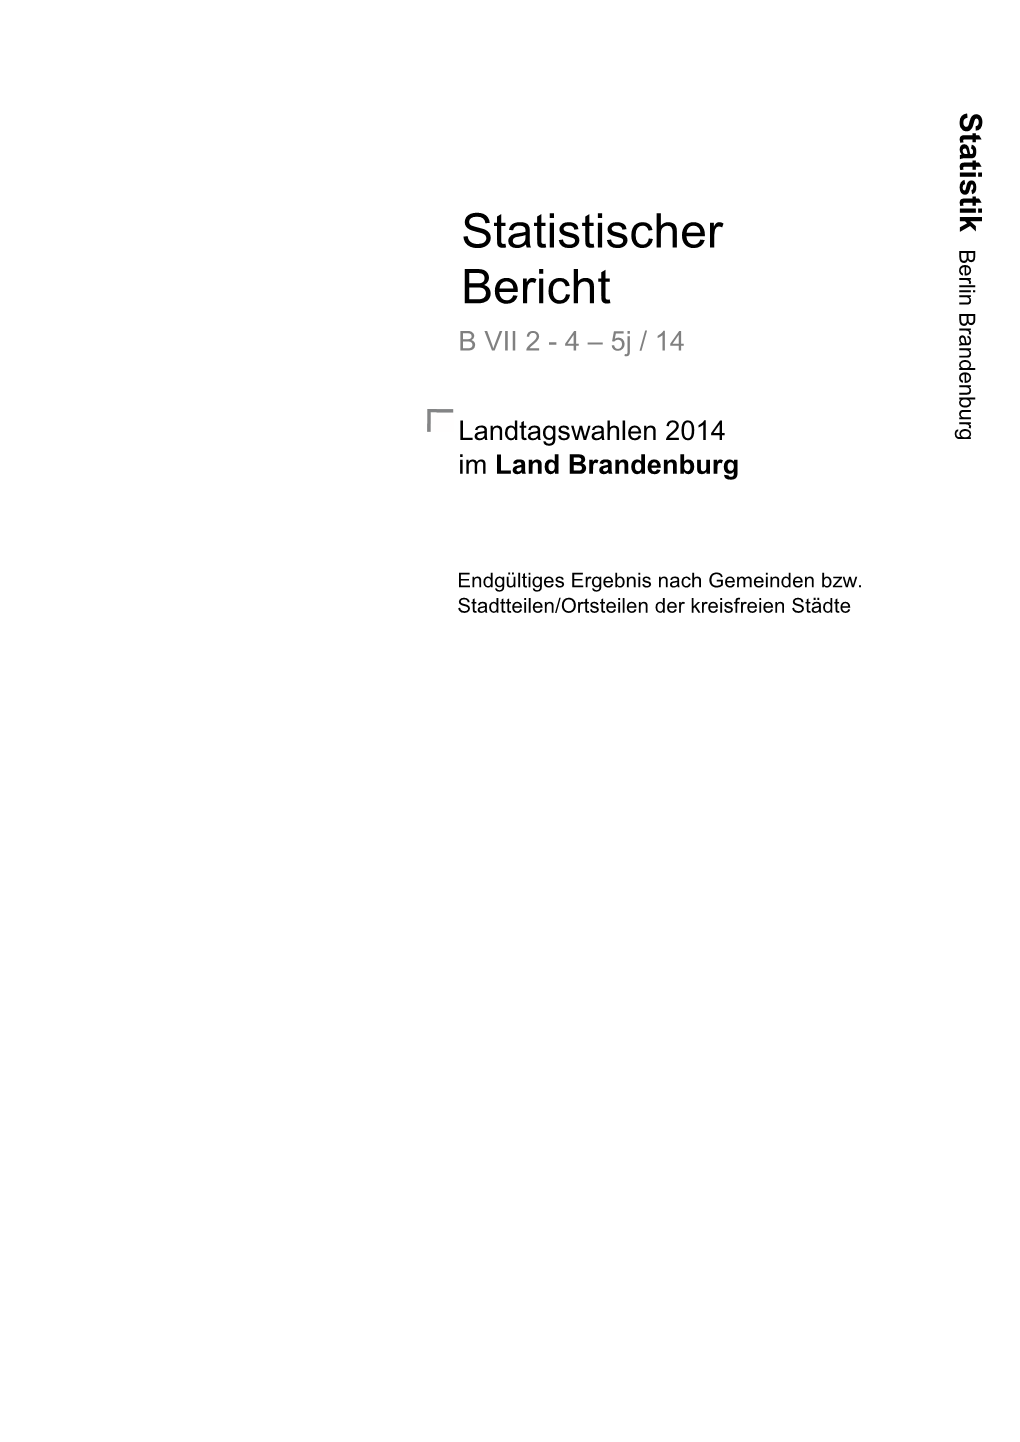 Landtagswahlen 2014 Im Land Brandenburg